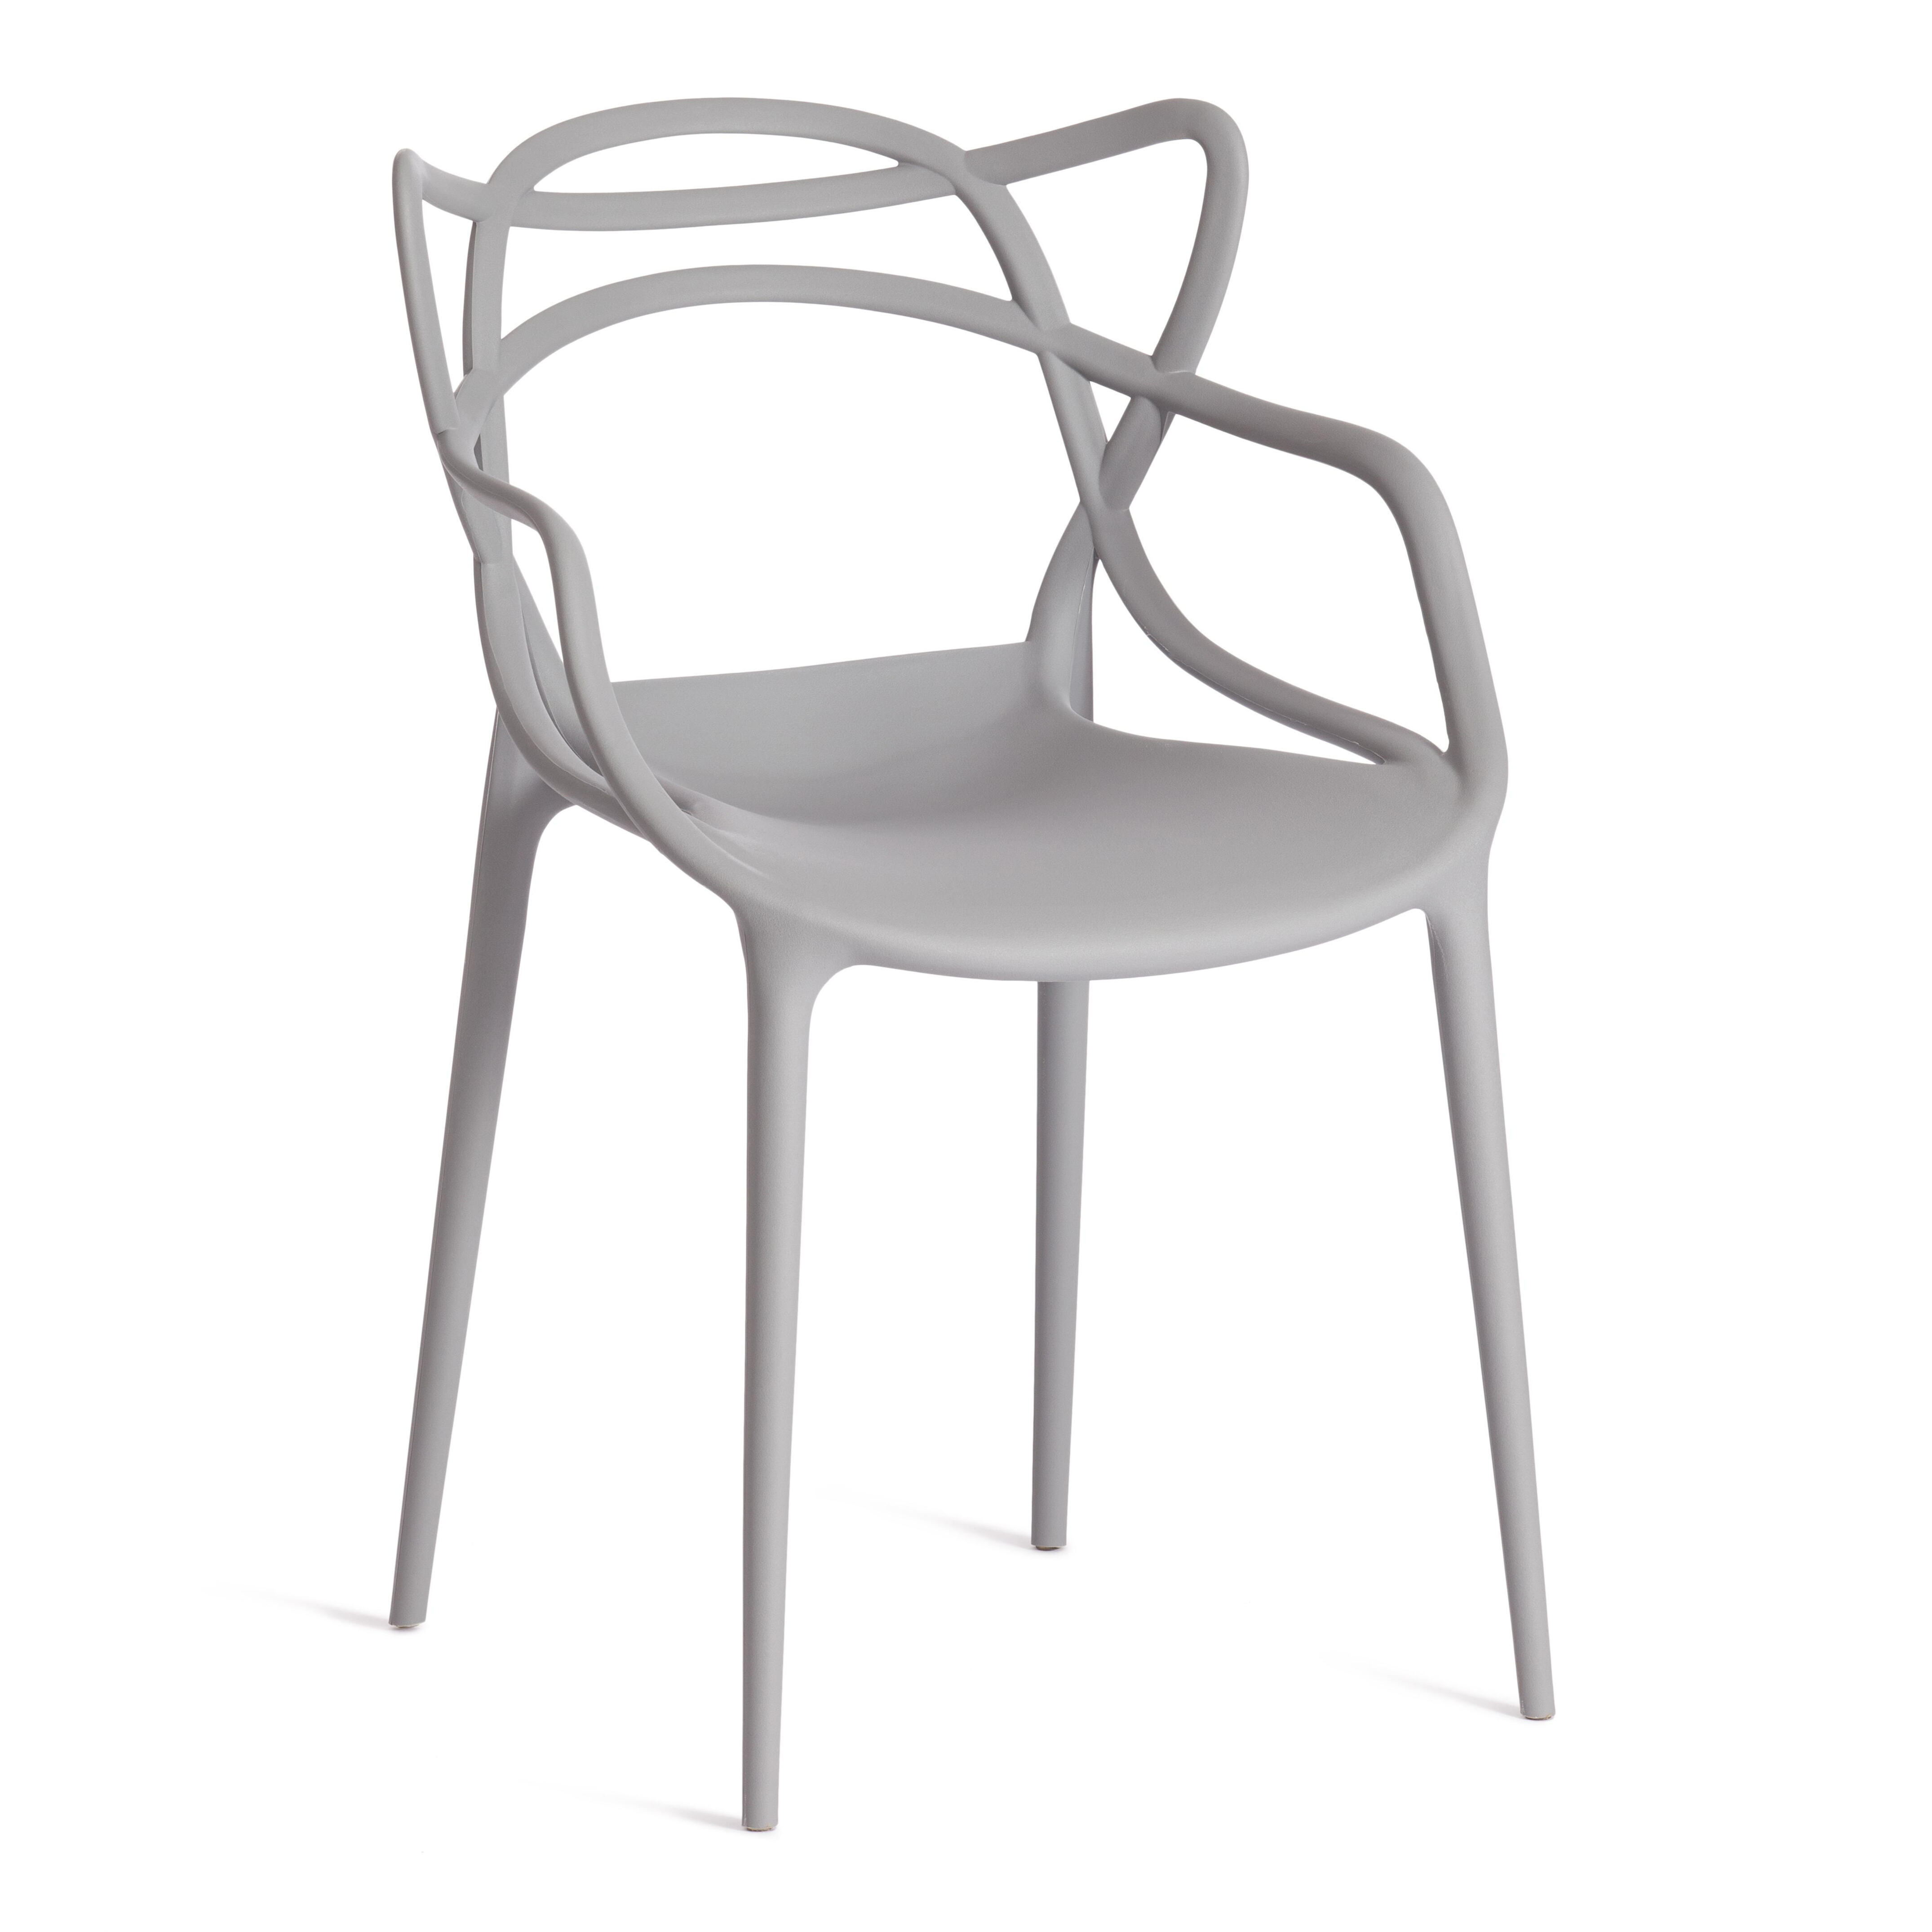 91092630 Кухонный стул Cat chair mod. 028 84х56х55 см пластик цвет серый MODERN STLM-0480149 TETCHAIR